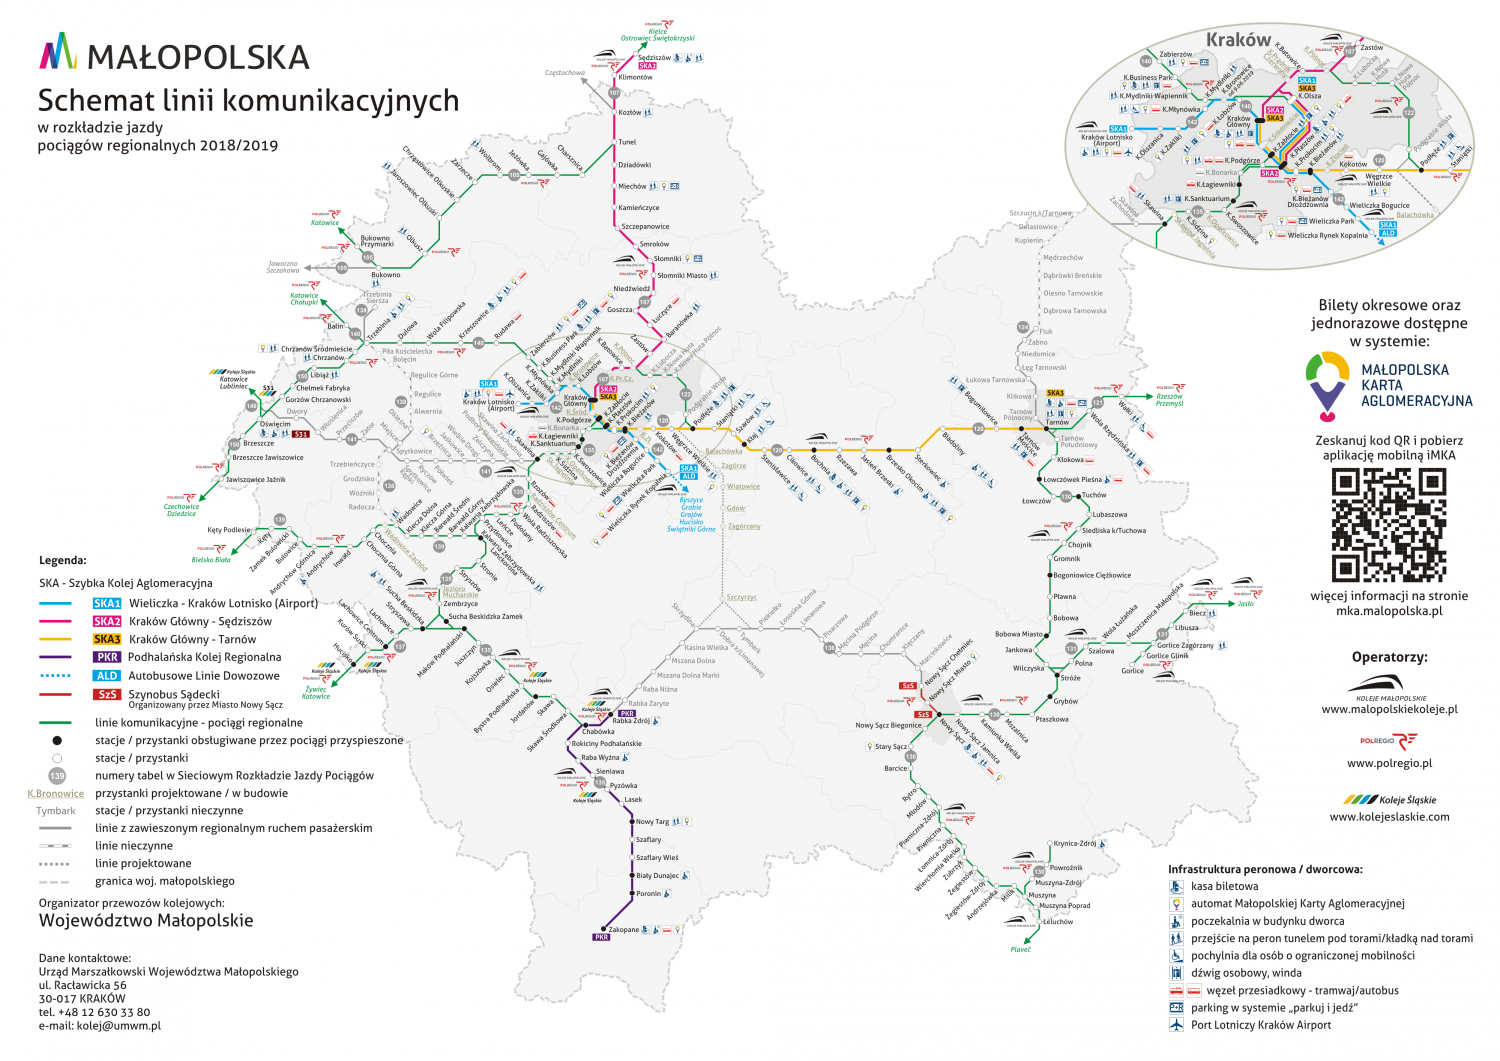 Schemat przedstawia linie komunikacyjne na których realizowane były przewozy kolejowe organizowane przez Województwo Małopolskie w ramach rozkładu jazdy 2018/2019